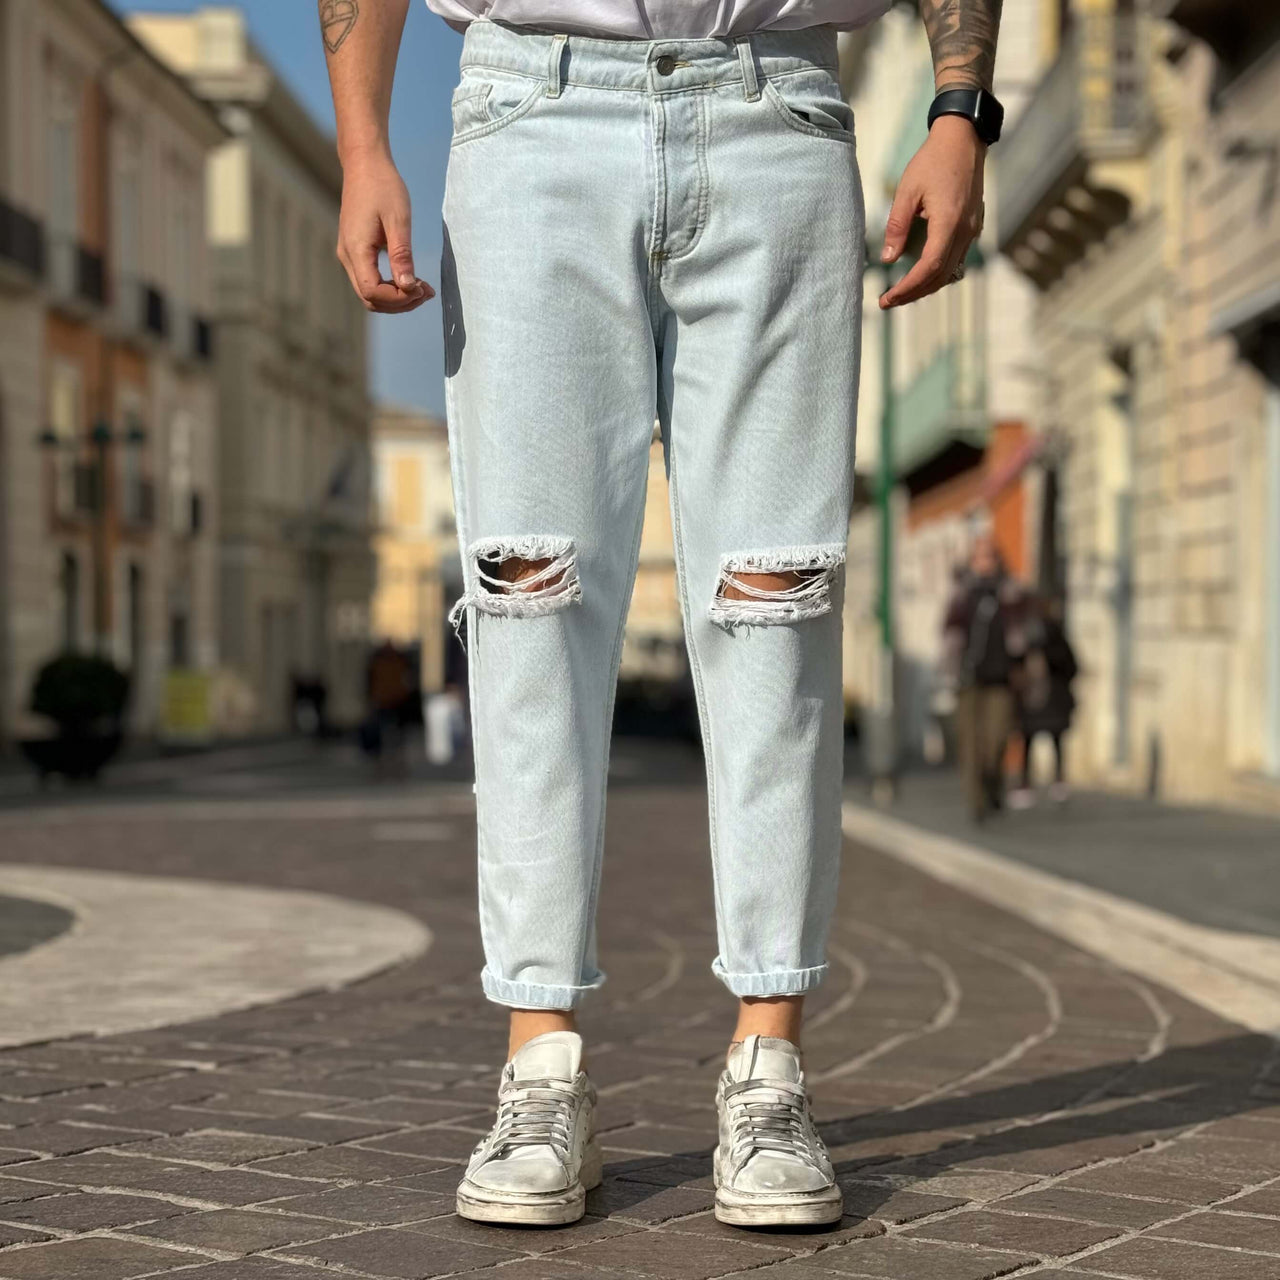 Jeans chiaro 4.0 strappo alle ginocchia - FLAG STORE